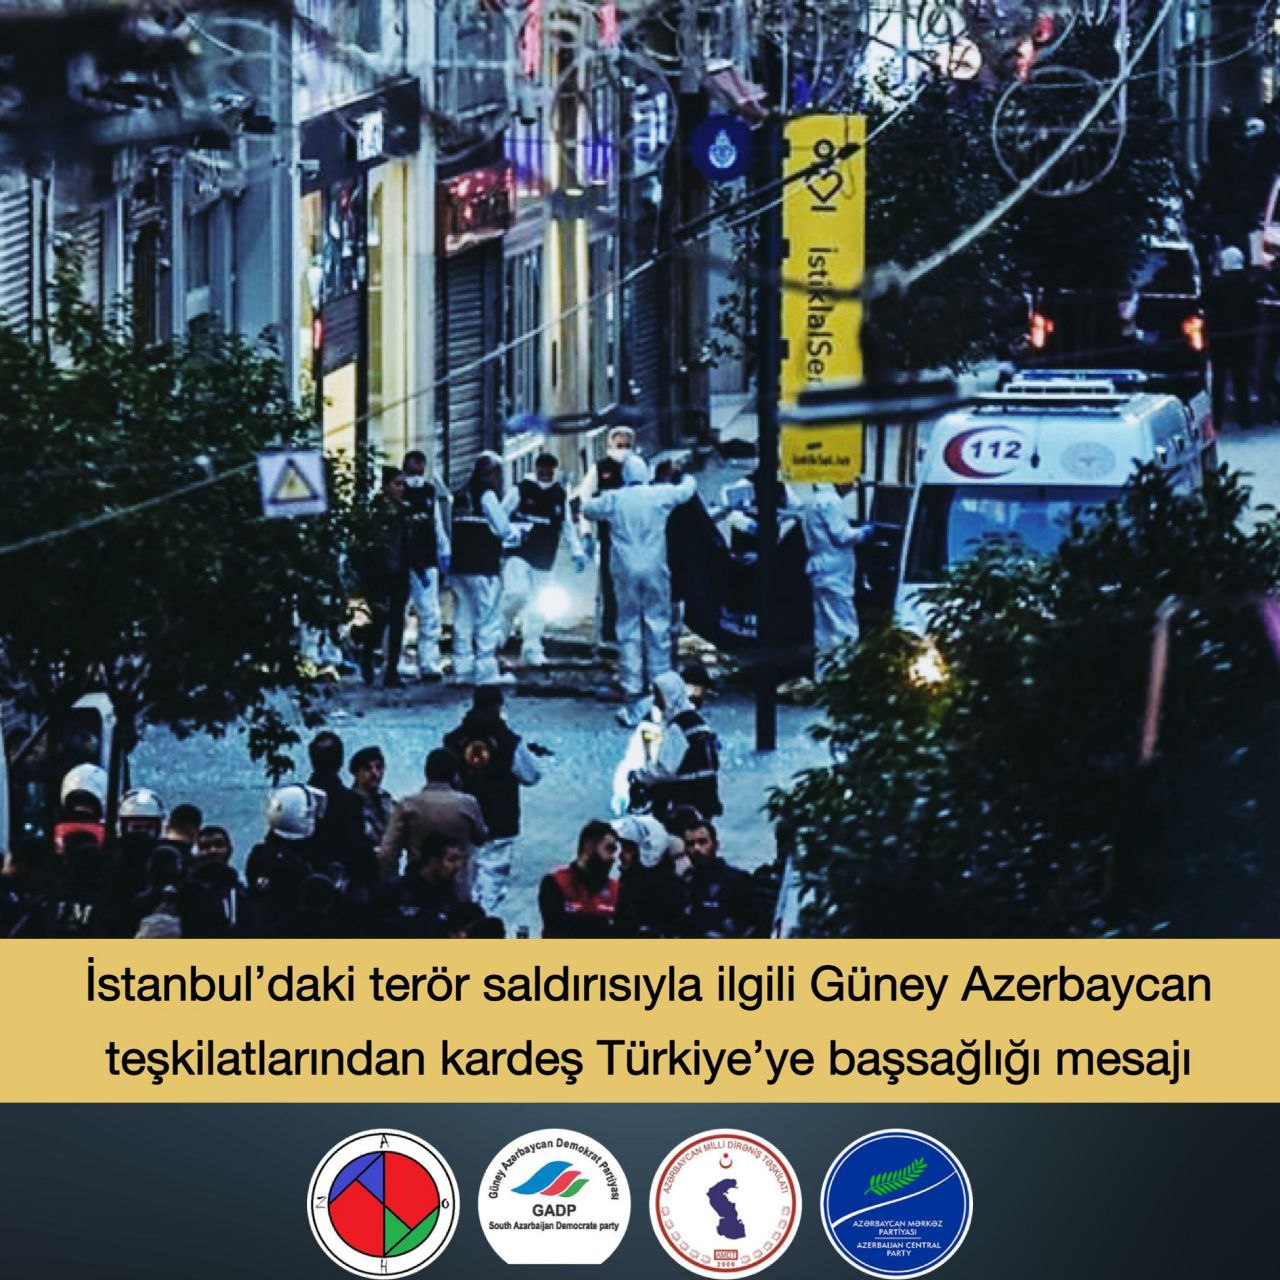 İstanbul’daki terör saldırısı ile ilgili kardeş Türkiye’ye başsağlığı mesajı